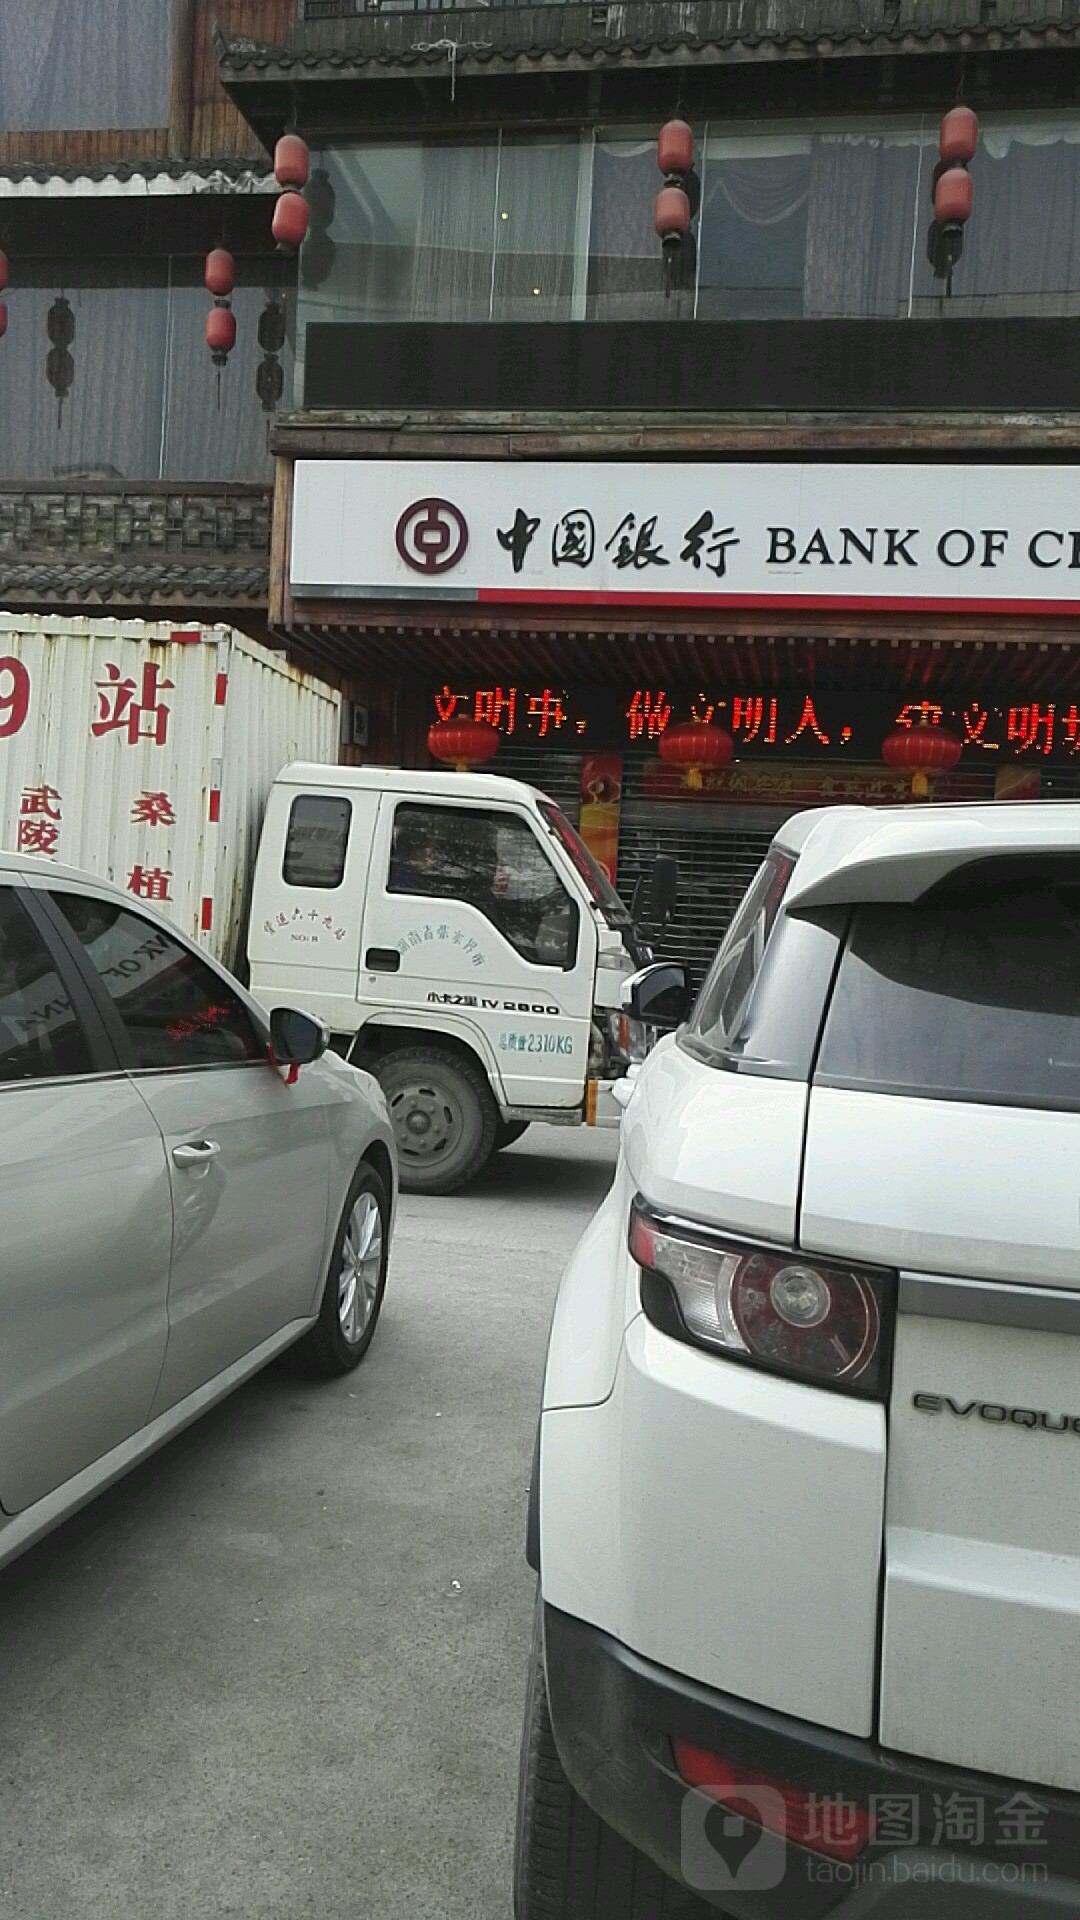 中國銀行24小時自助銀行(張家界分行廣場分理處)